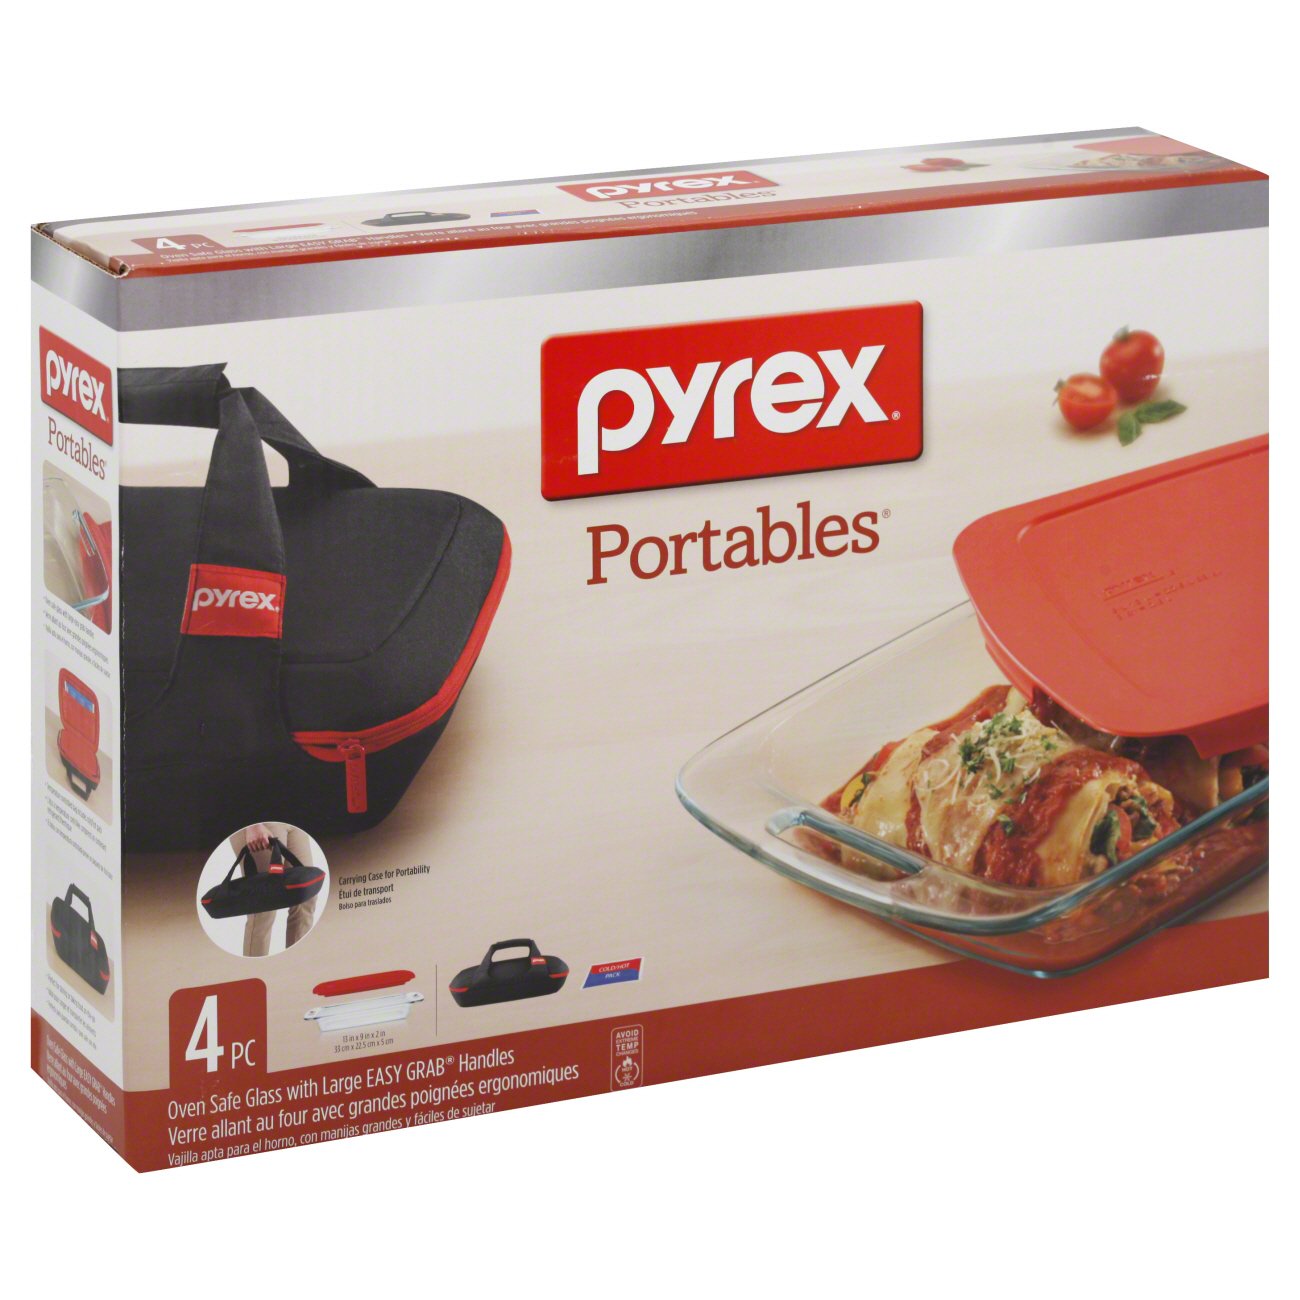 Pyrex 1102266 Pyrex Portable Bakeware Set, 4 Piece 